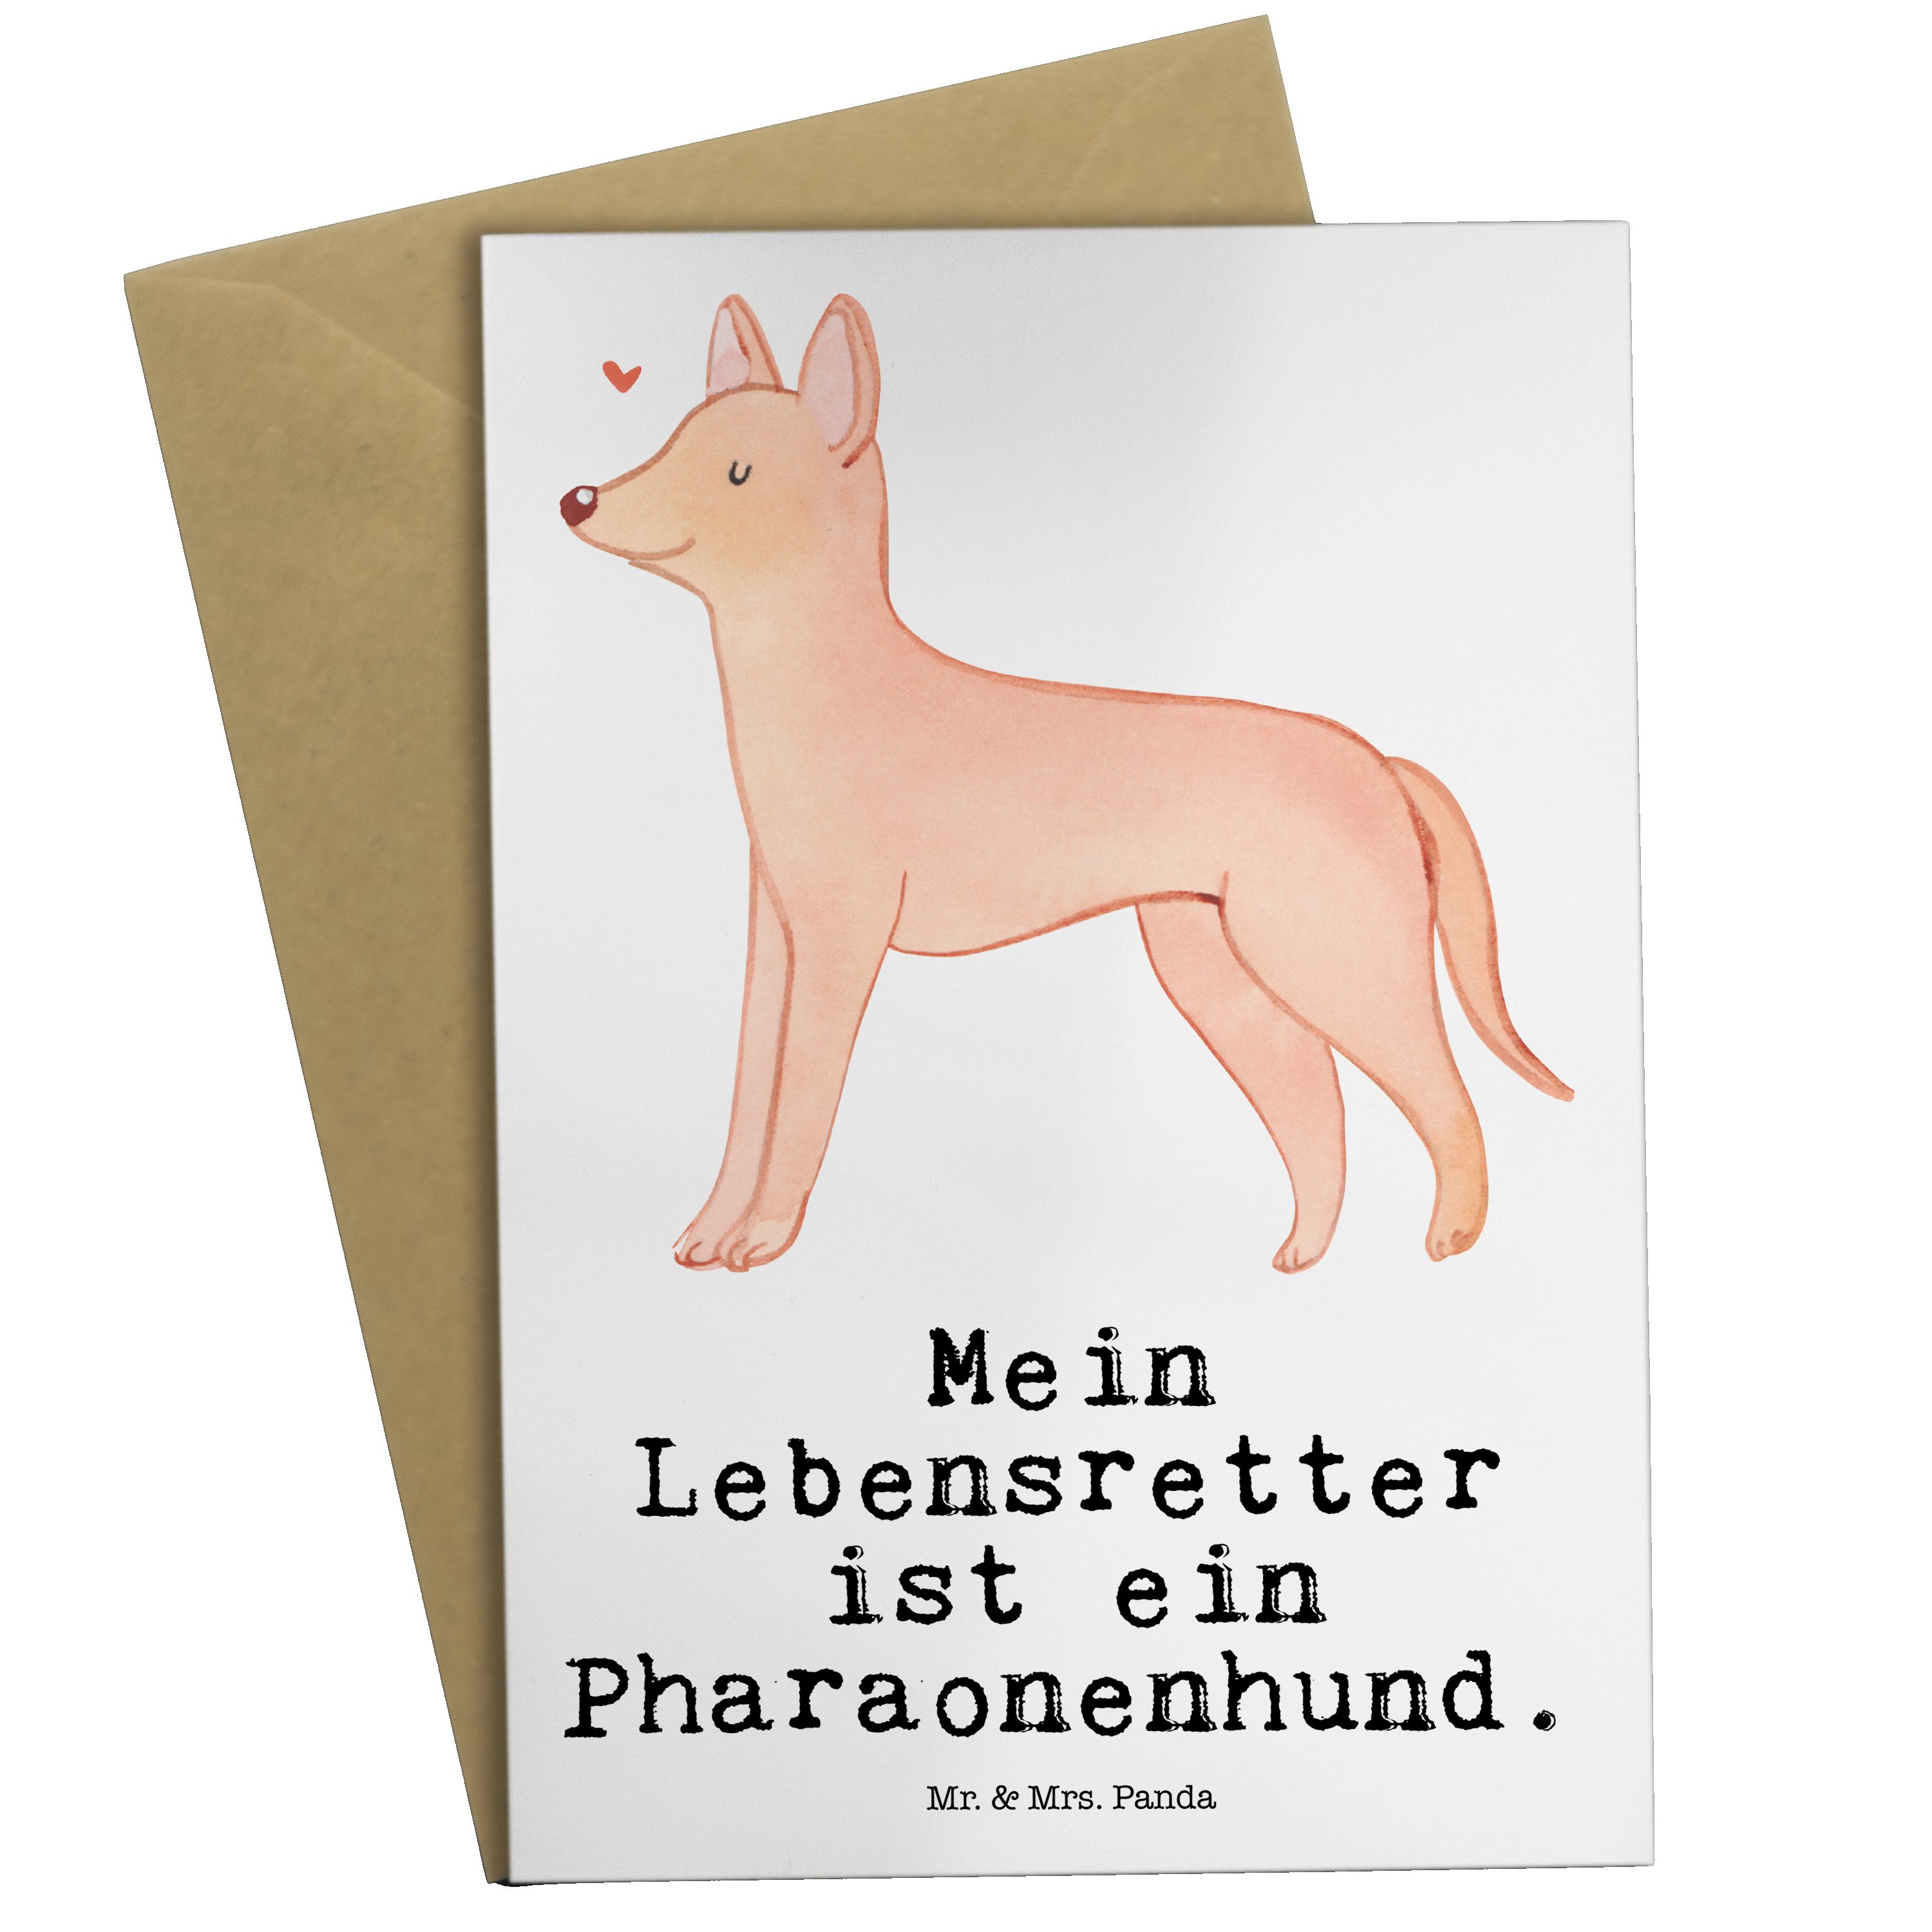 Mr. & Mrs. Panda Grußkarte Pharaonenhund Lebensretter - Weiß - Geschenk, Geburtstagskarte, Hochz